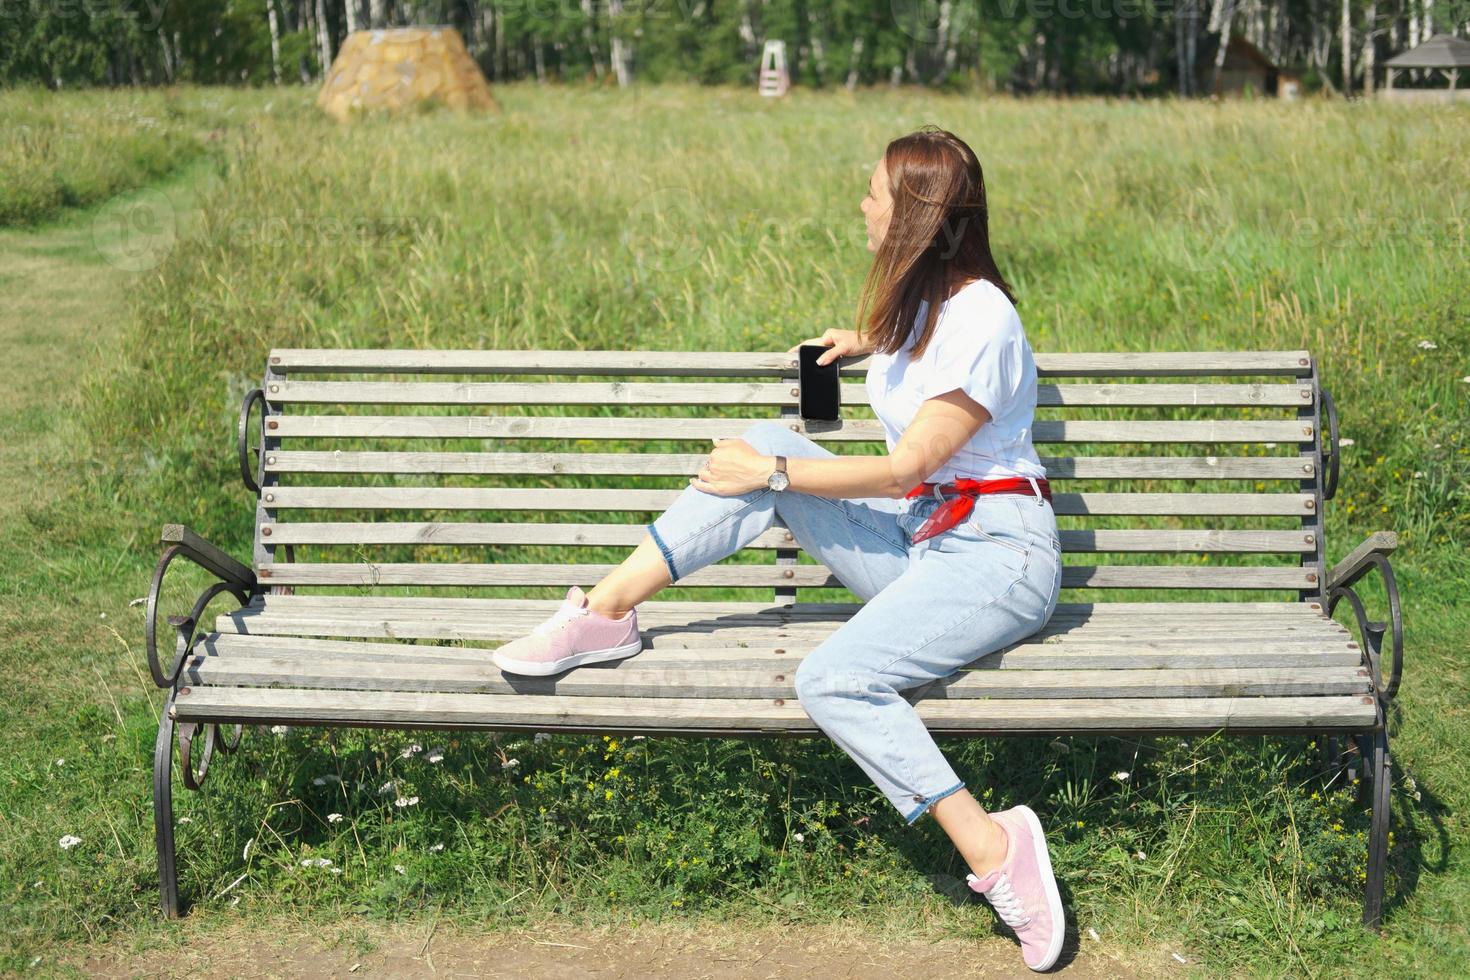 jonge mooie vrouw zittend op een bankje en genieten van aangenaam weer. zijaanzicht. vrouw die opzij kijkt en een smartphone vasthoudt. alleen reizen en lokaal reisconcept foto